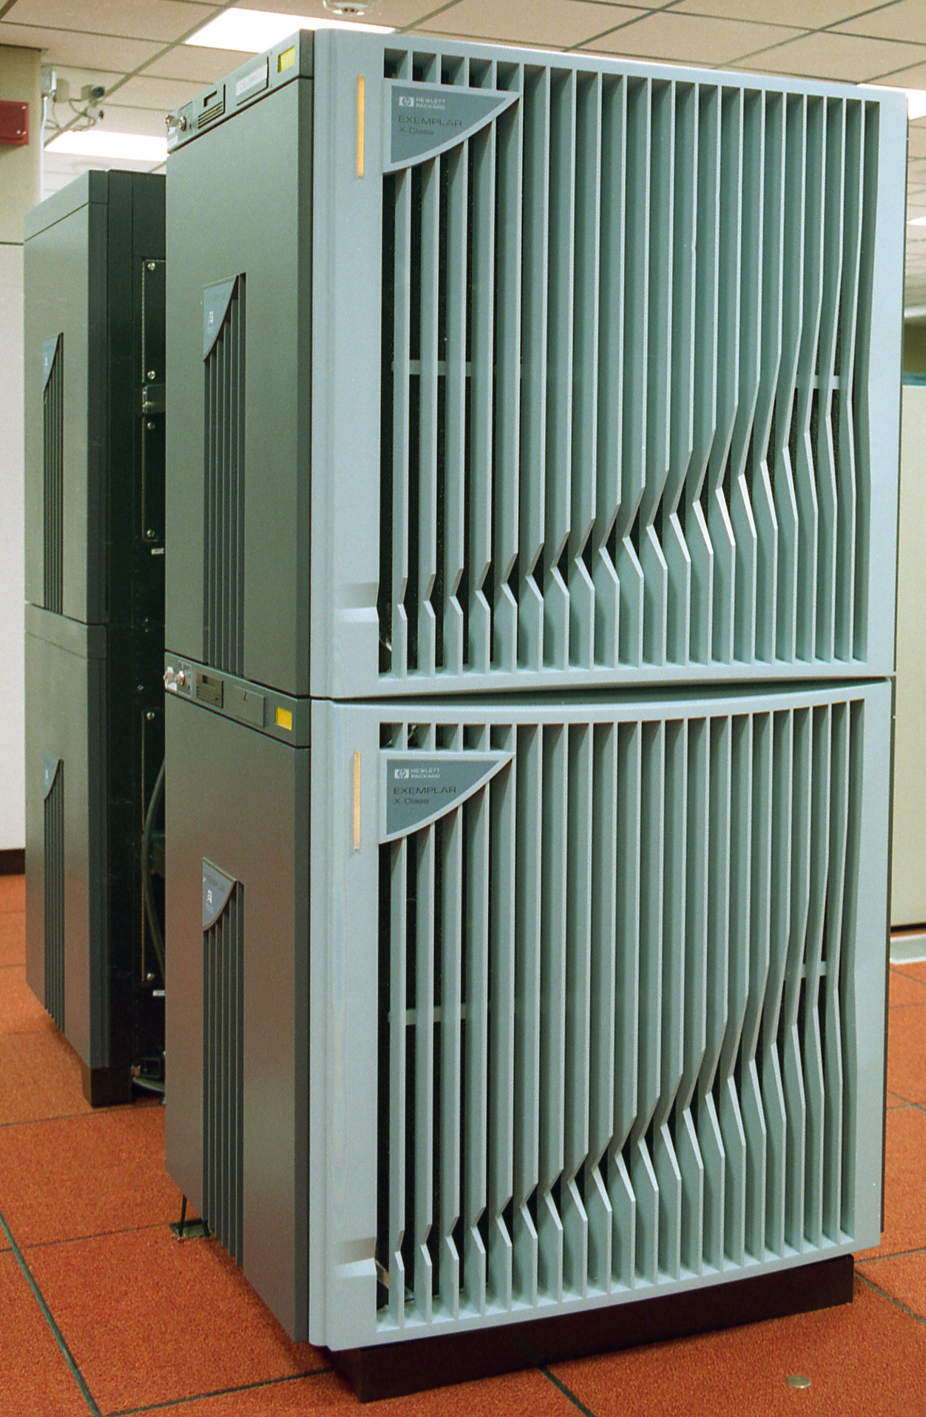 HP Exemplar supercomputer